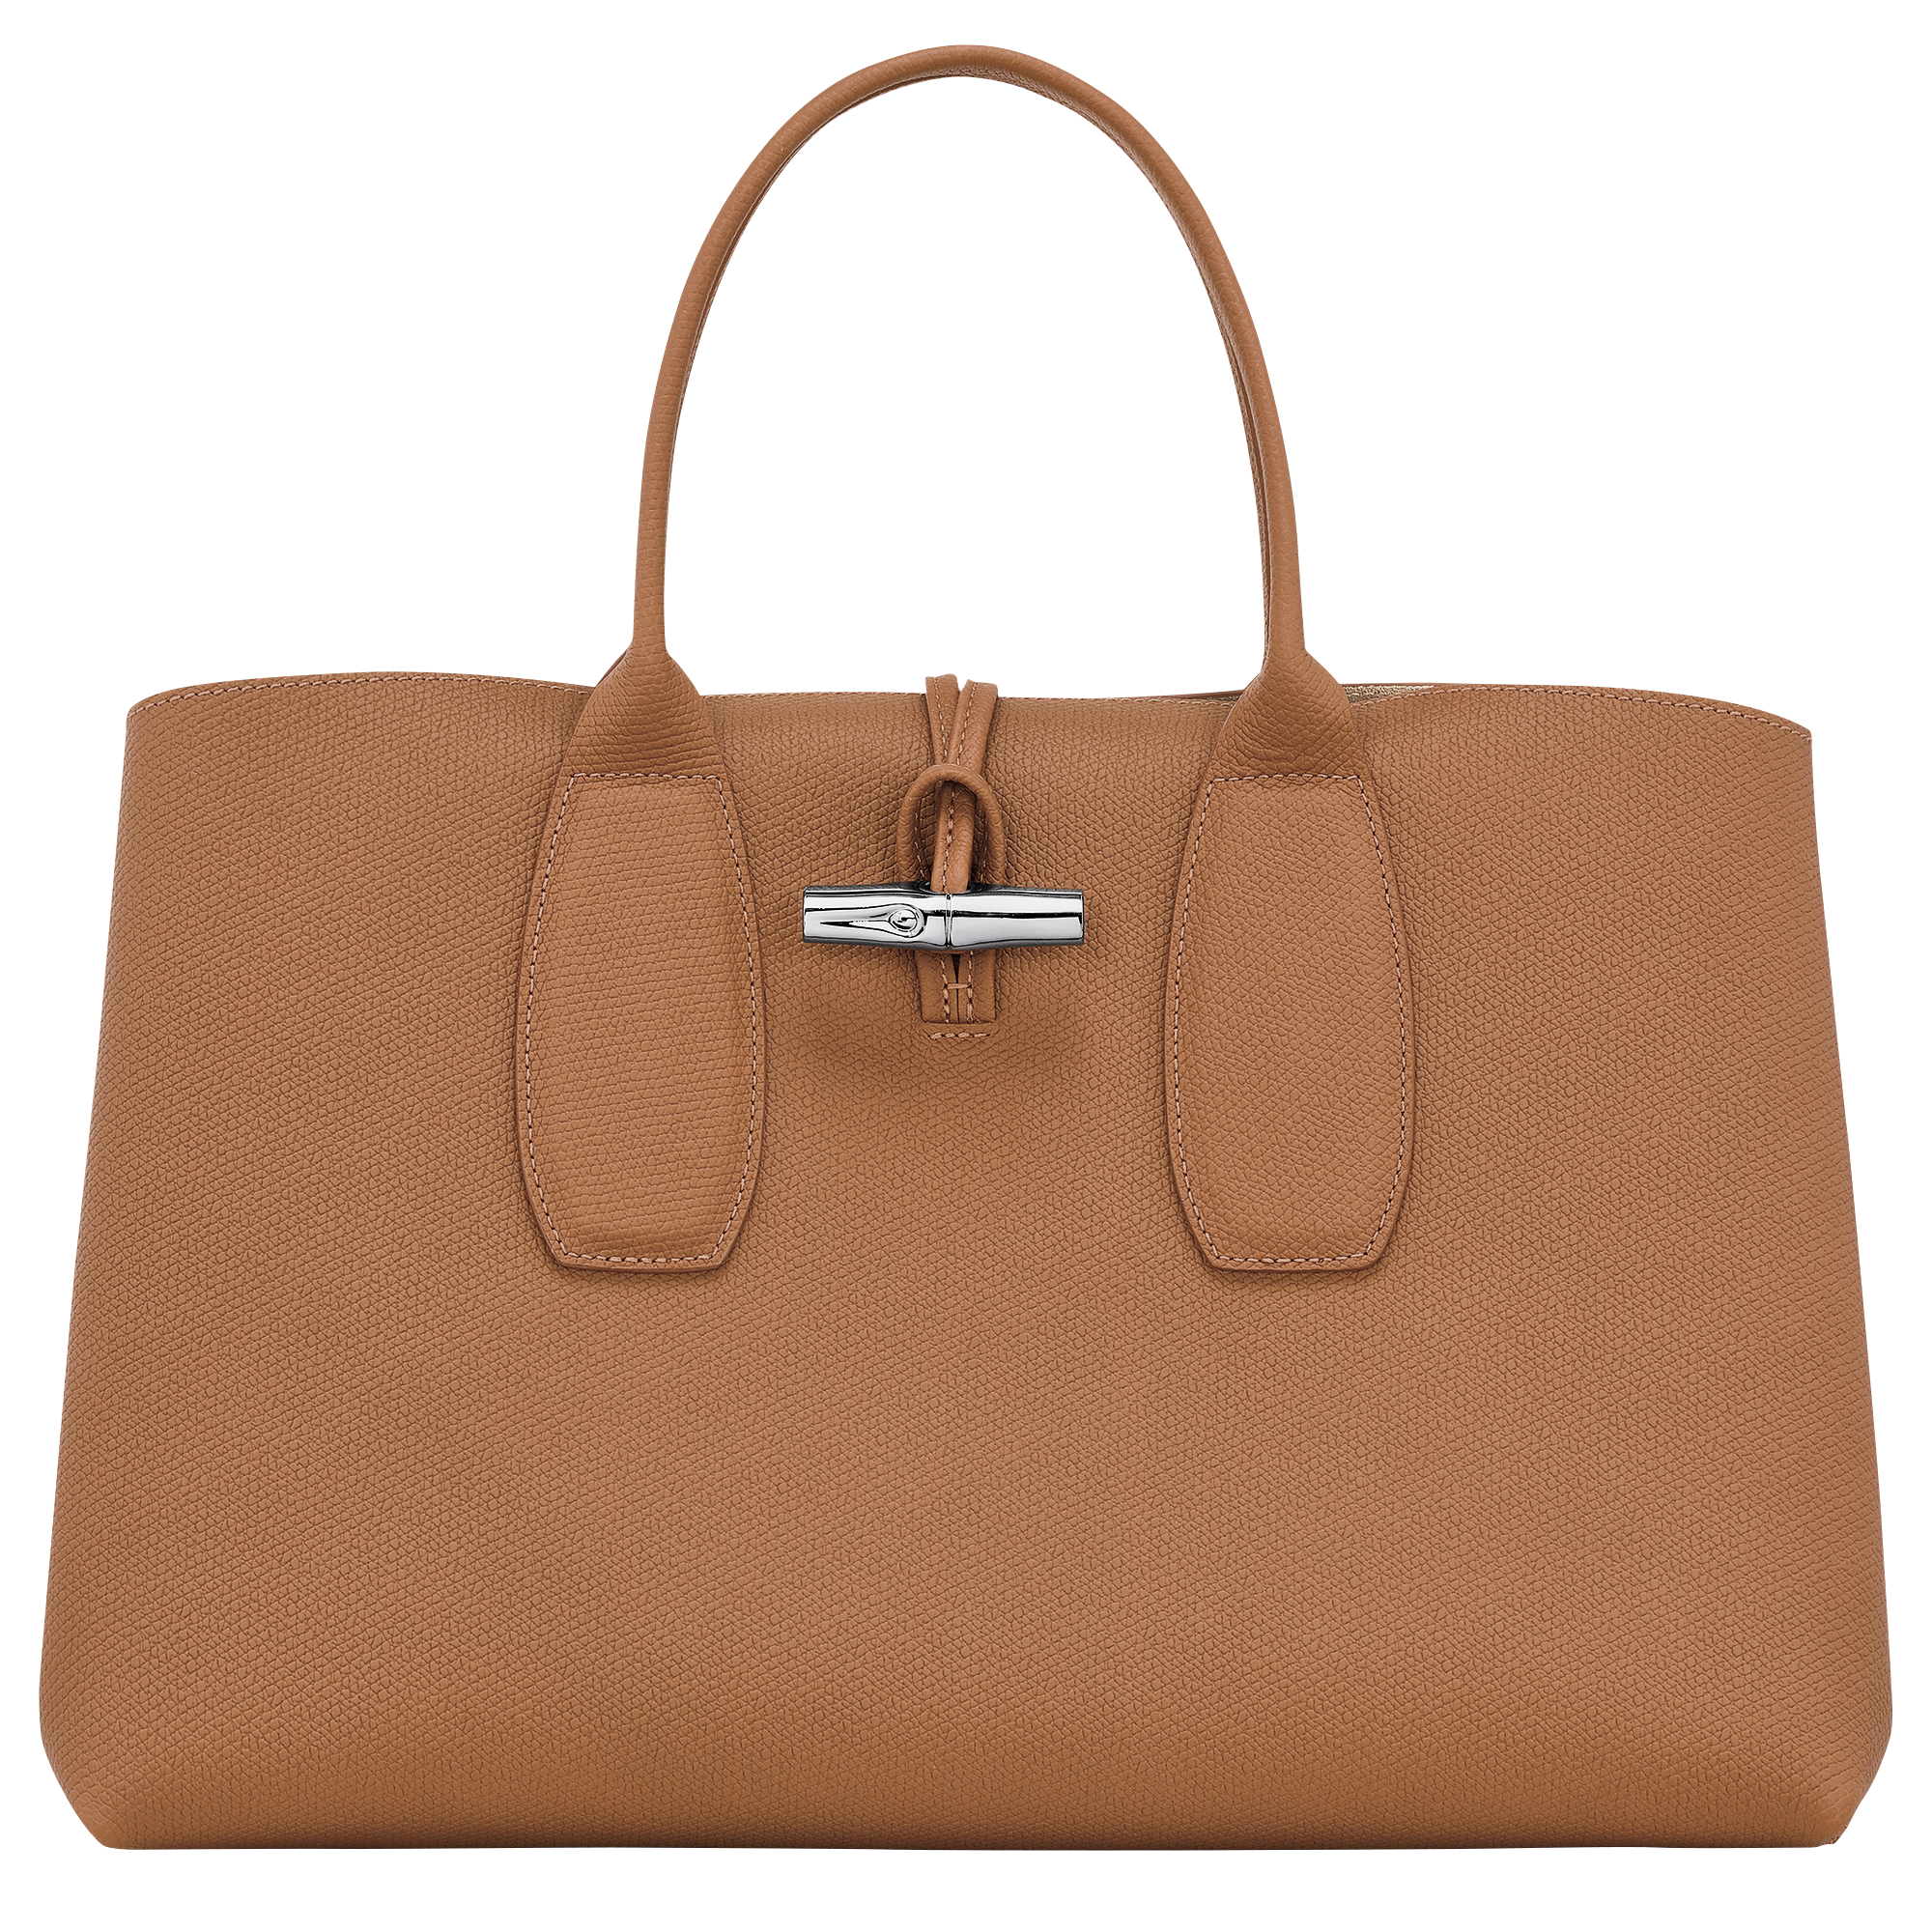 Longchamp Roseau Medium Top Handle Bag in Green